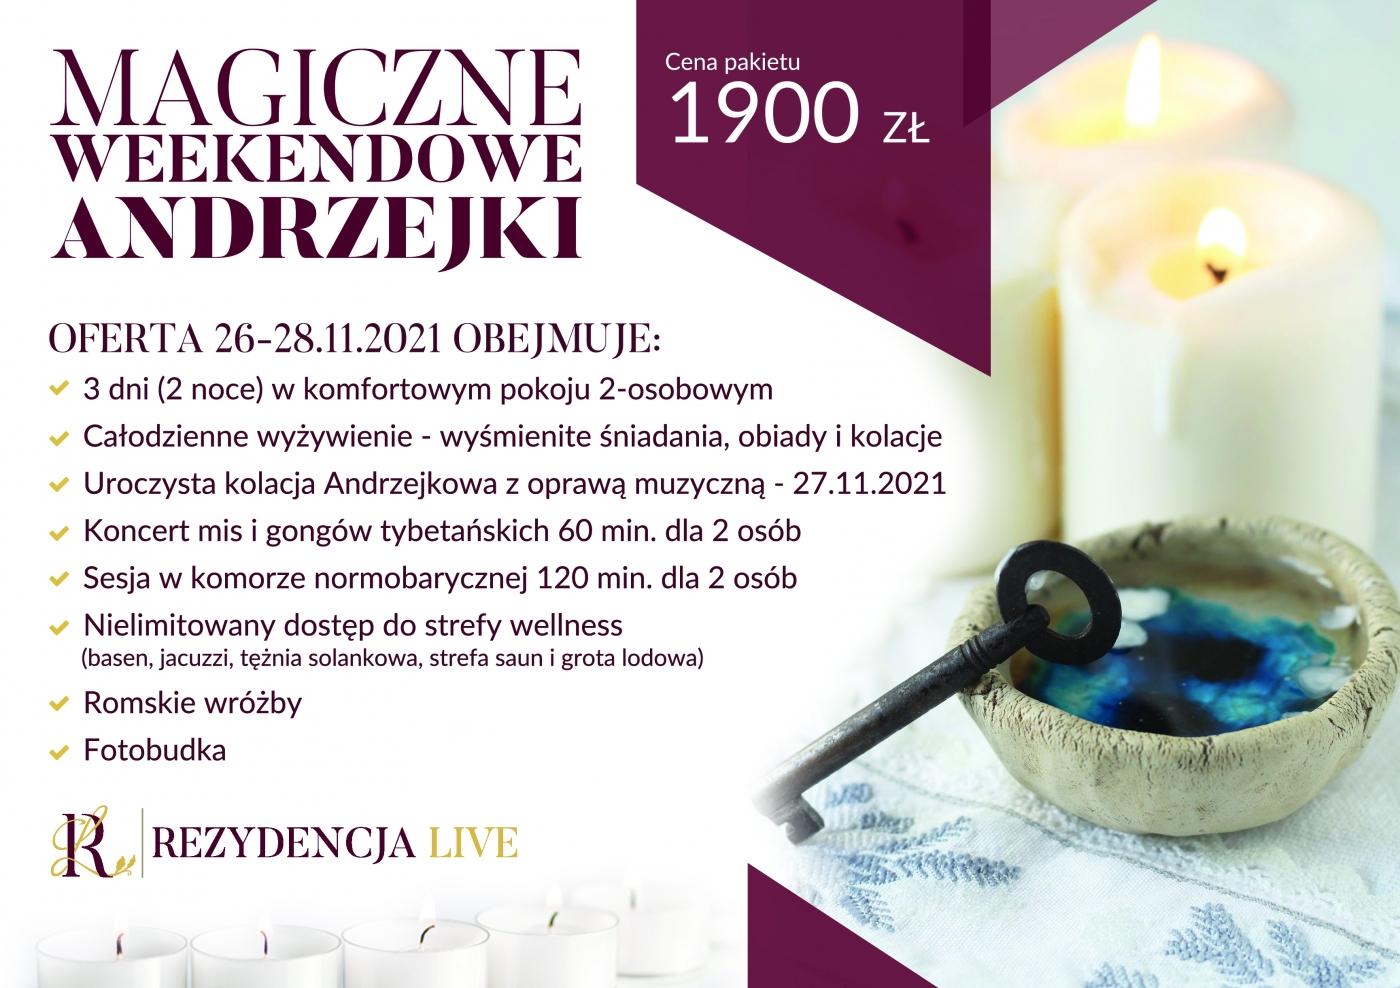 26-28.11.21 Magiczne Weekendowe Andrzejki